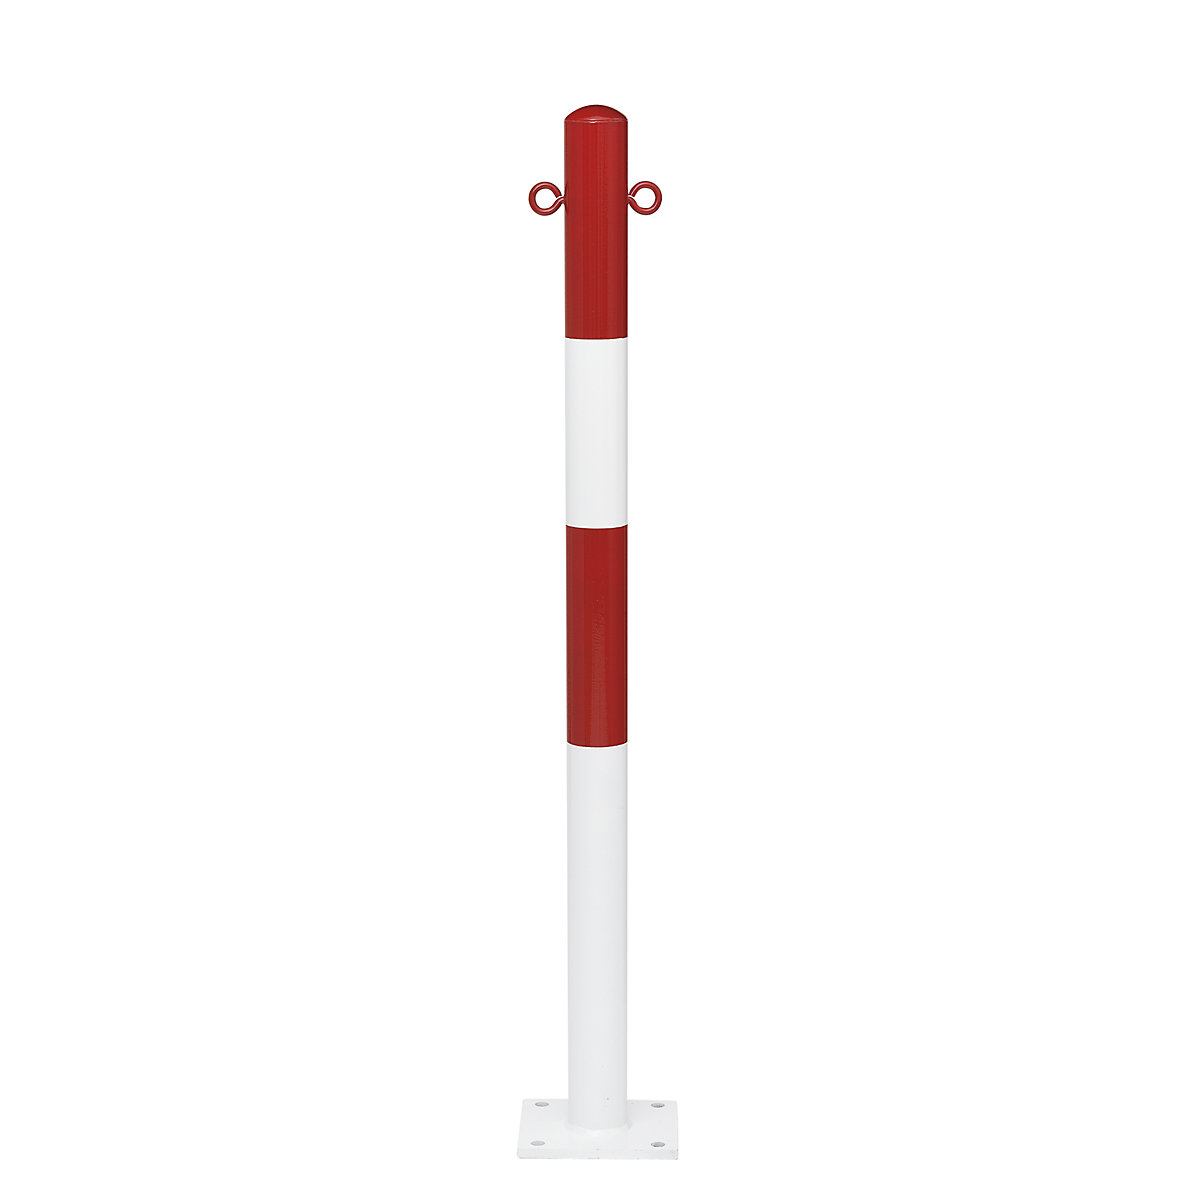 Zahradzovací stĺpik, na pripevnenie hmoždinkami, Ø 76 mm, červeno-biela plastová povrchová úprava, 2 oká-13